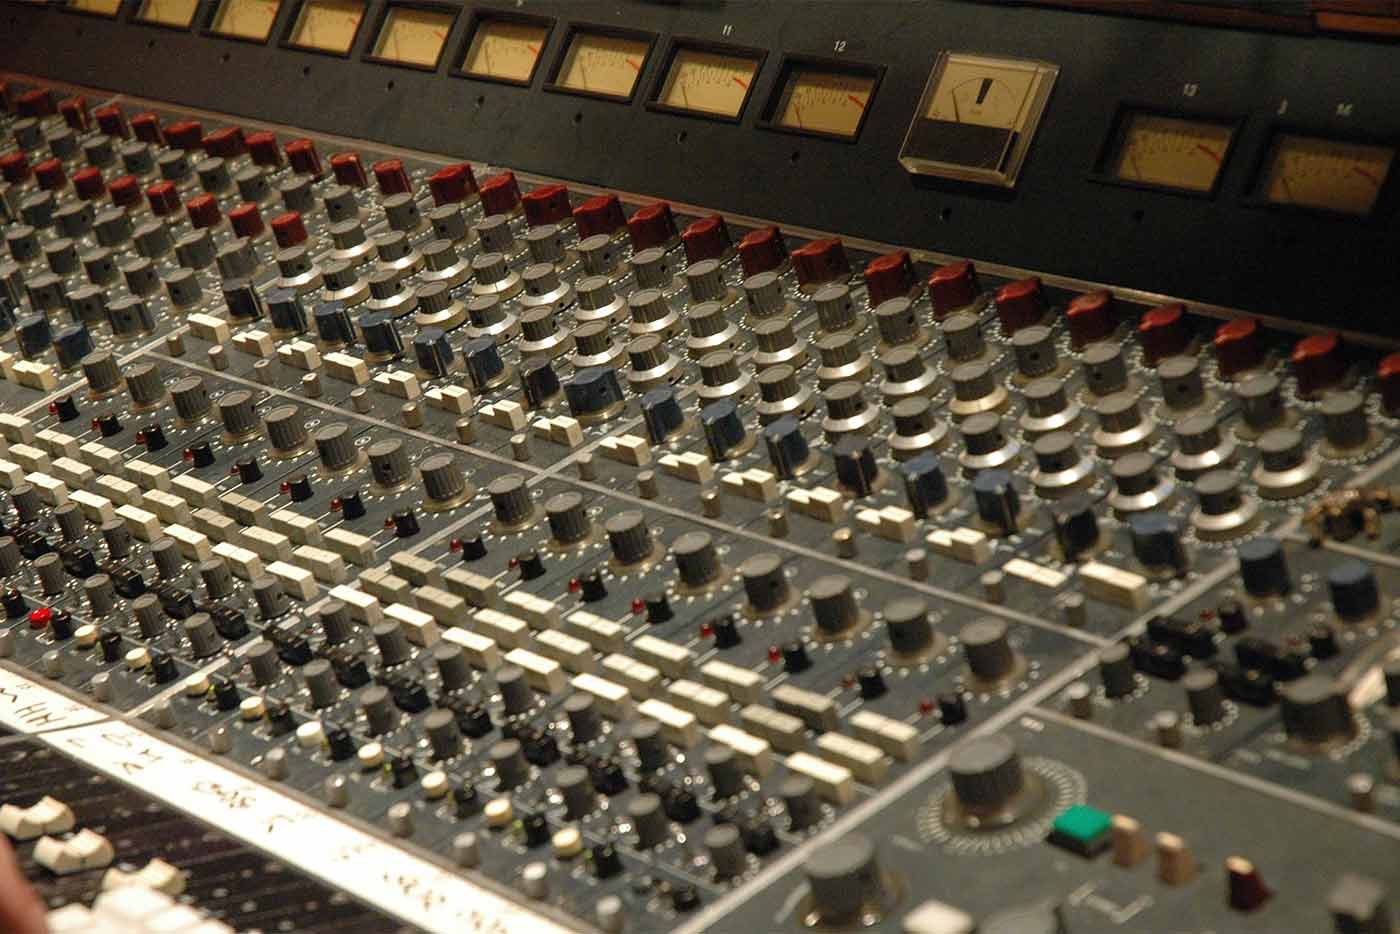 Estudios de grabación: donde se cocina la música (1)